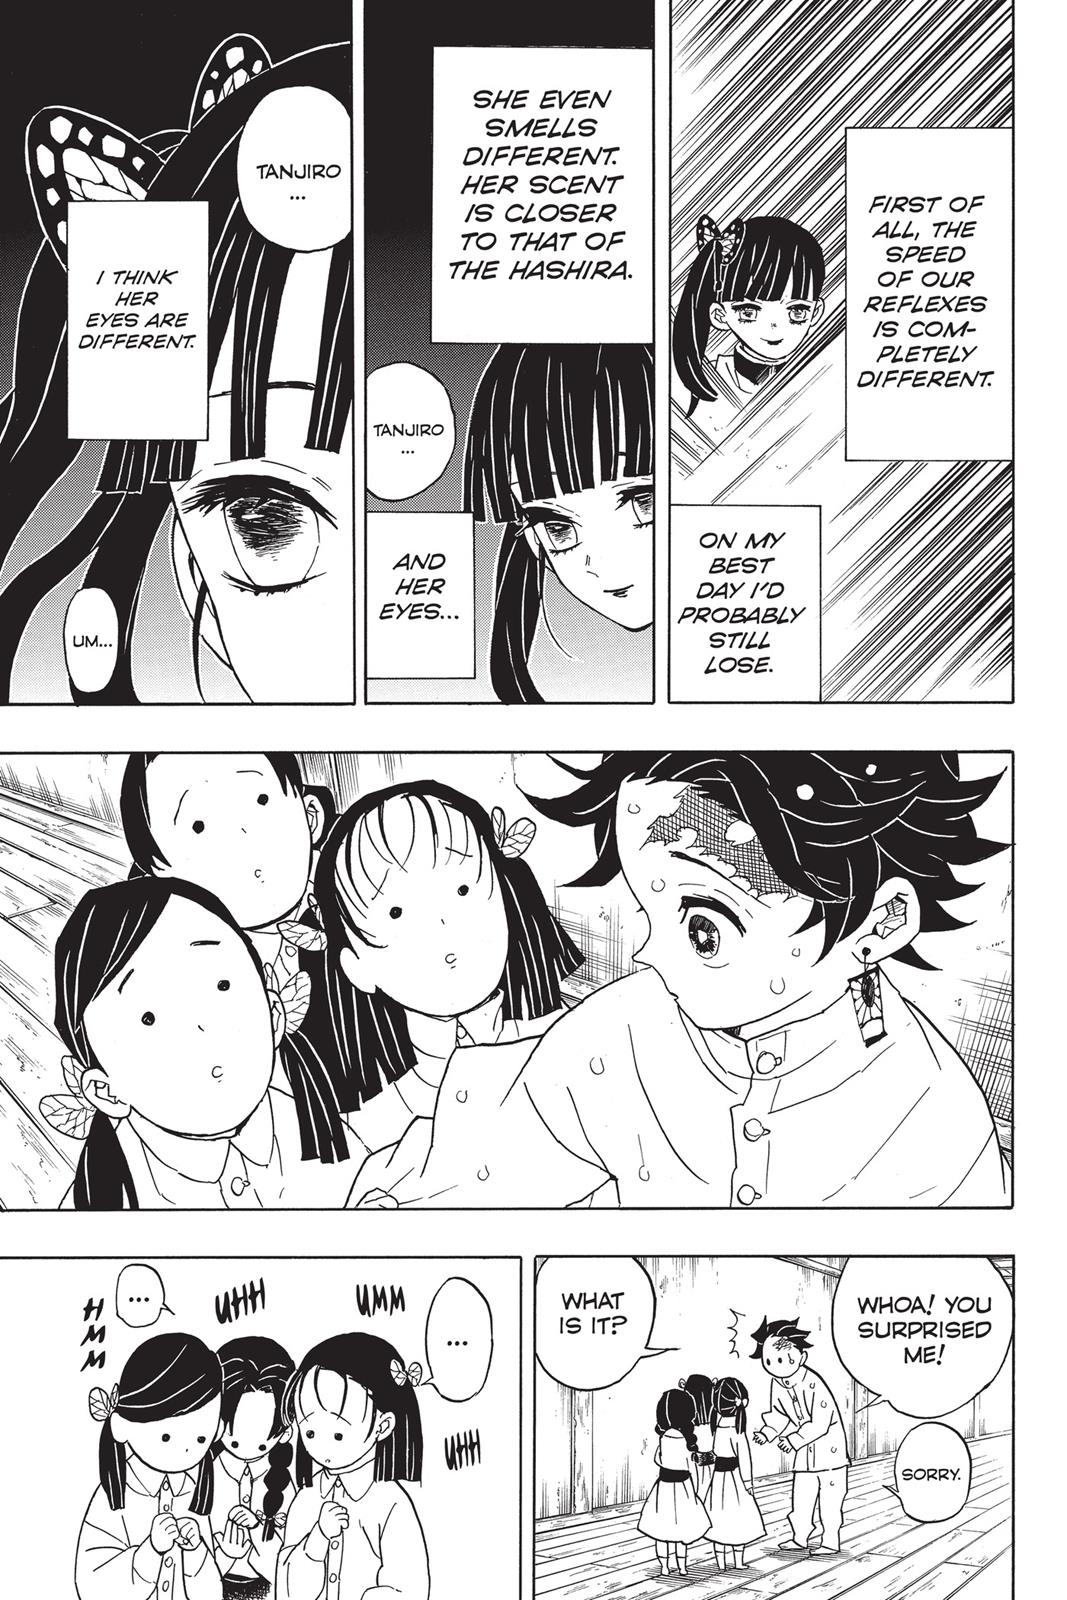 Demon Slayer Manga Manga Chapter - 49 - image 16